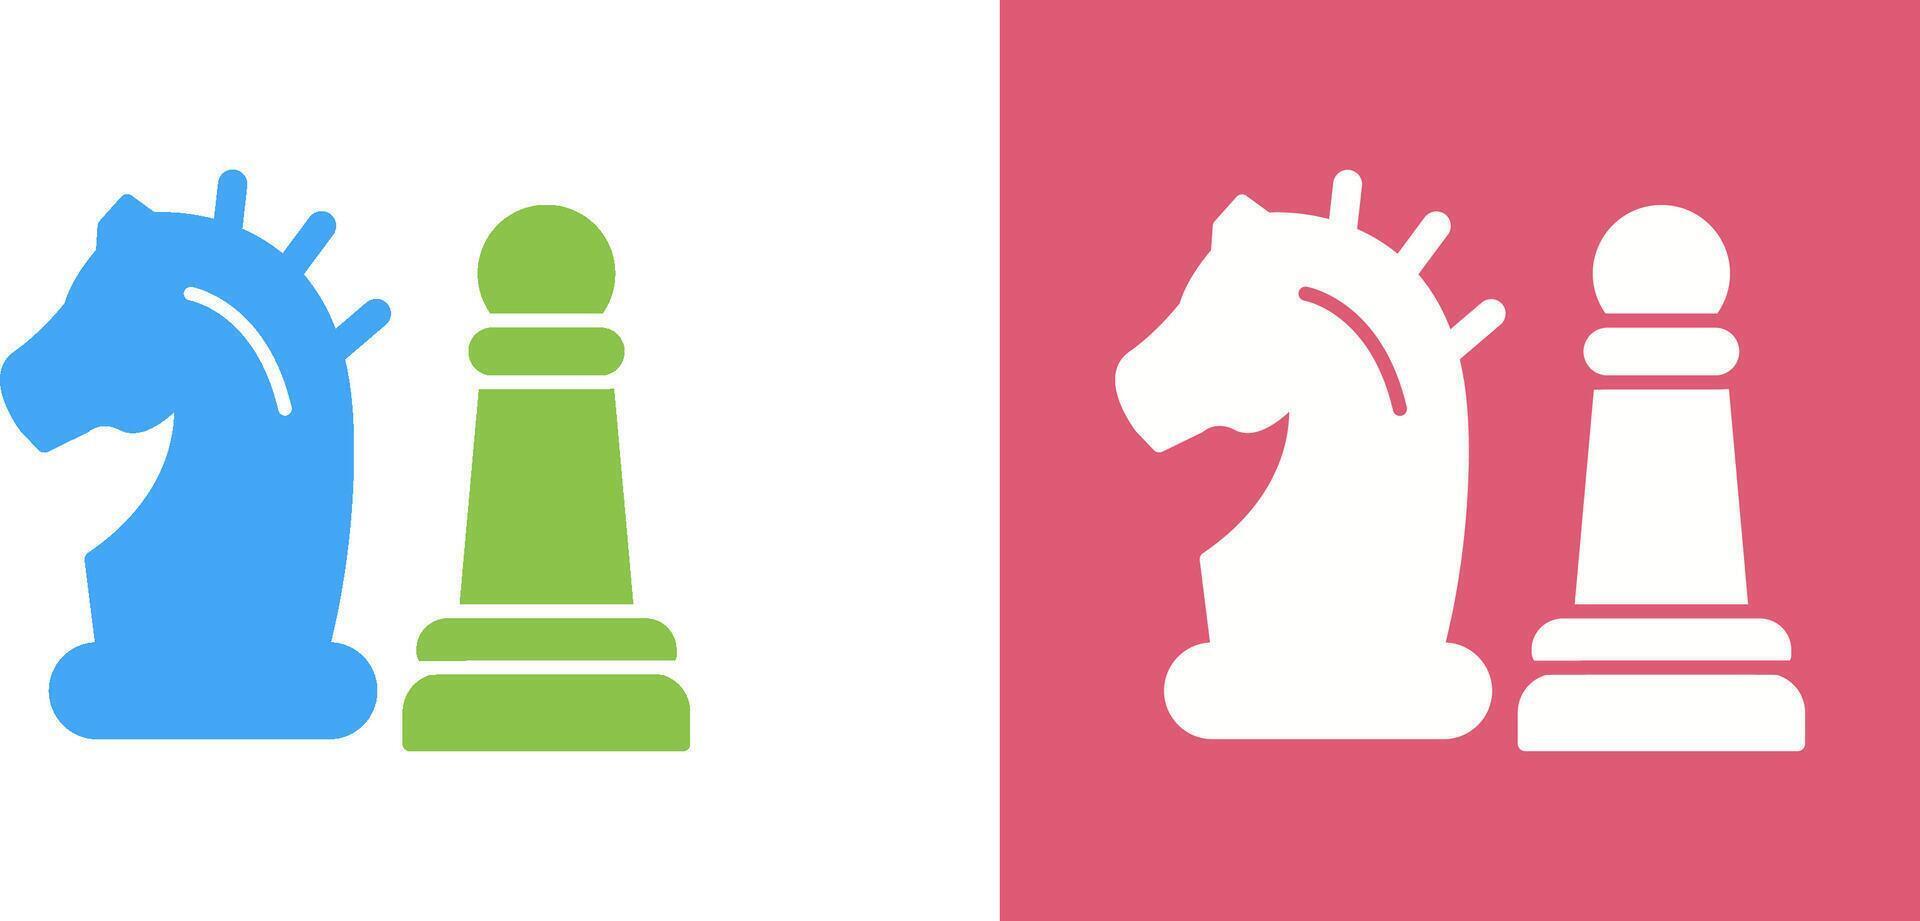 schackpjäs ikon design vektor